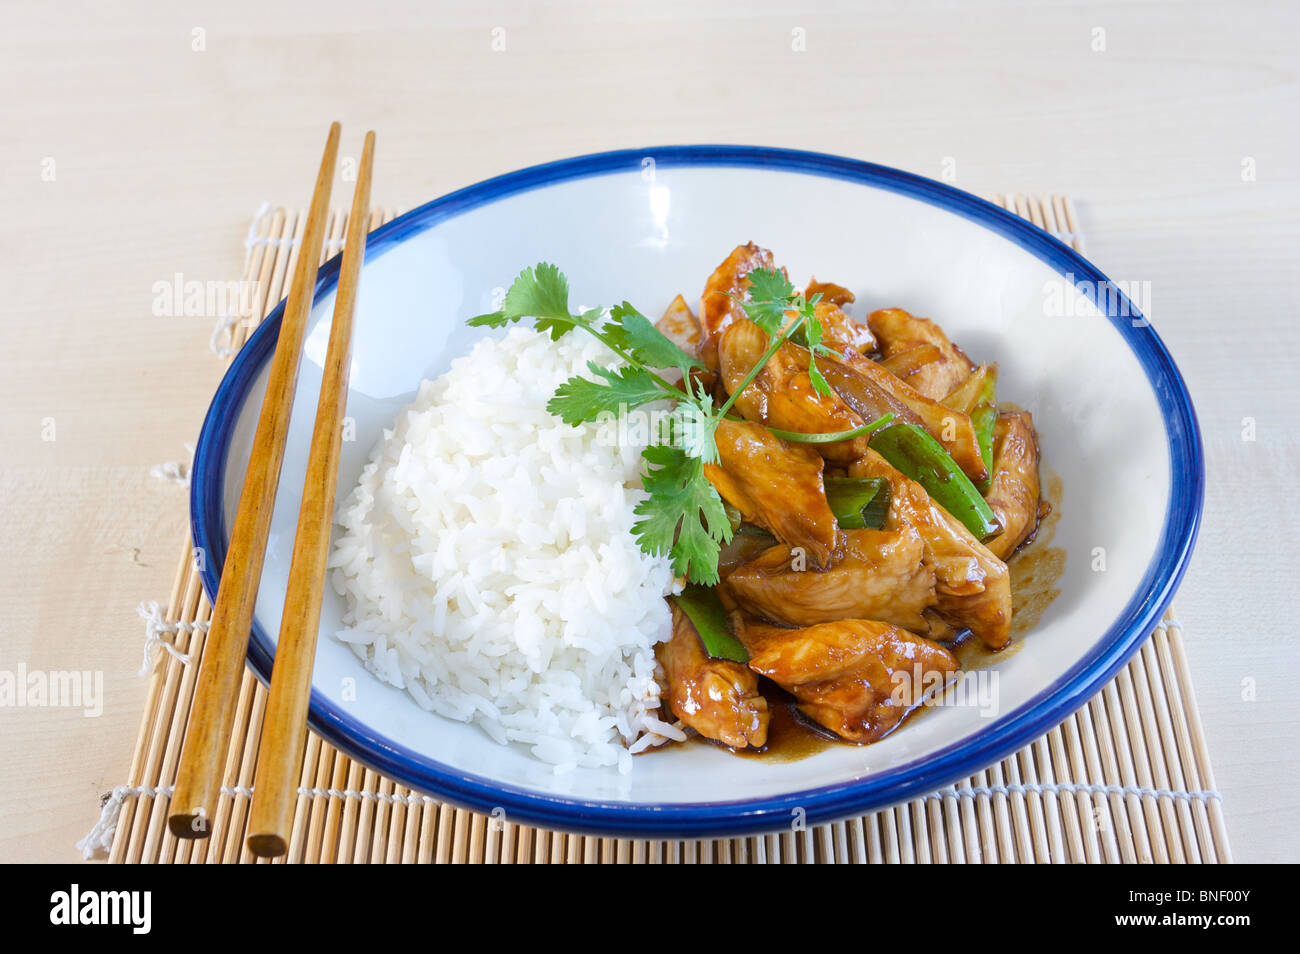 Cuisine asiatique riz poulet thai food chinese food Banque D'Images